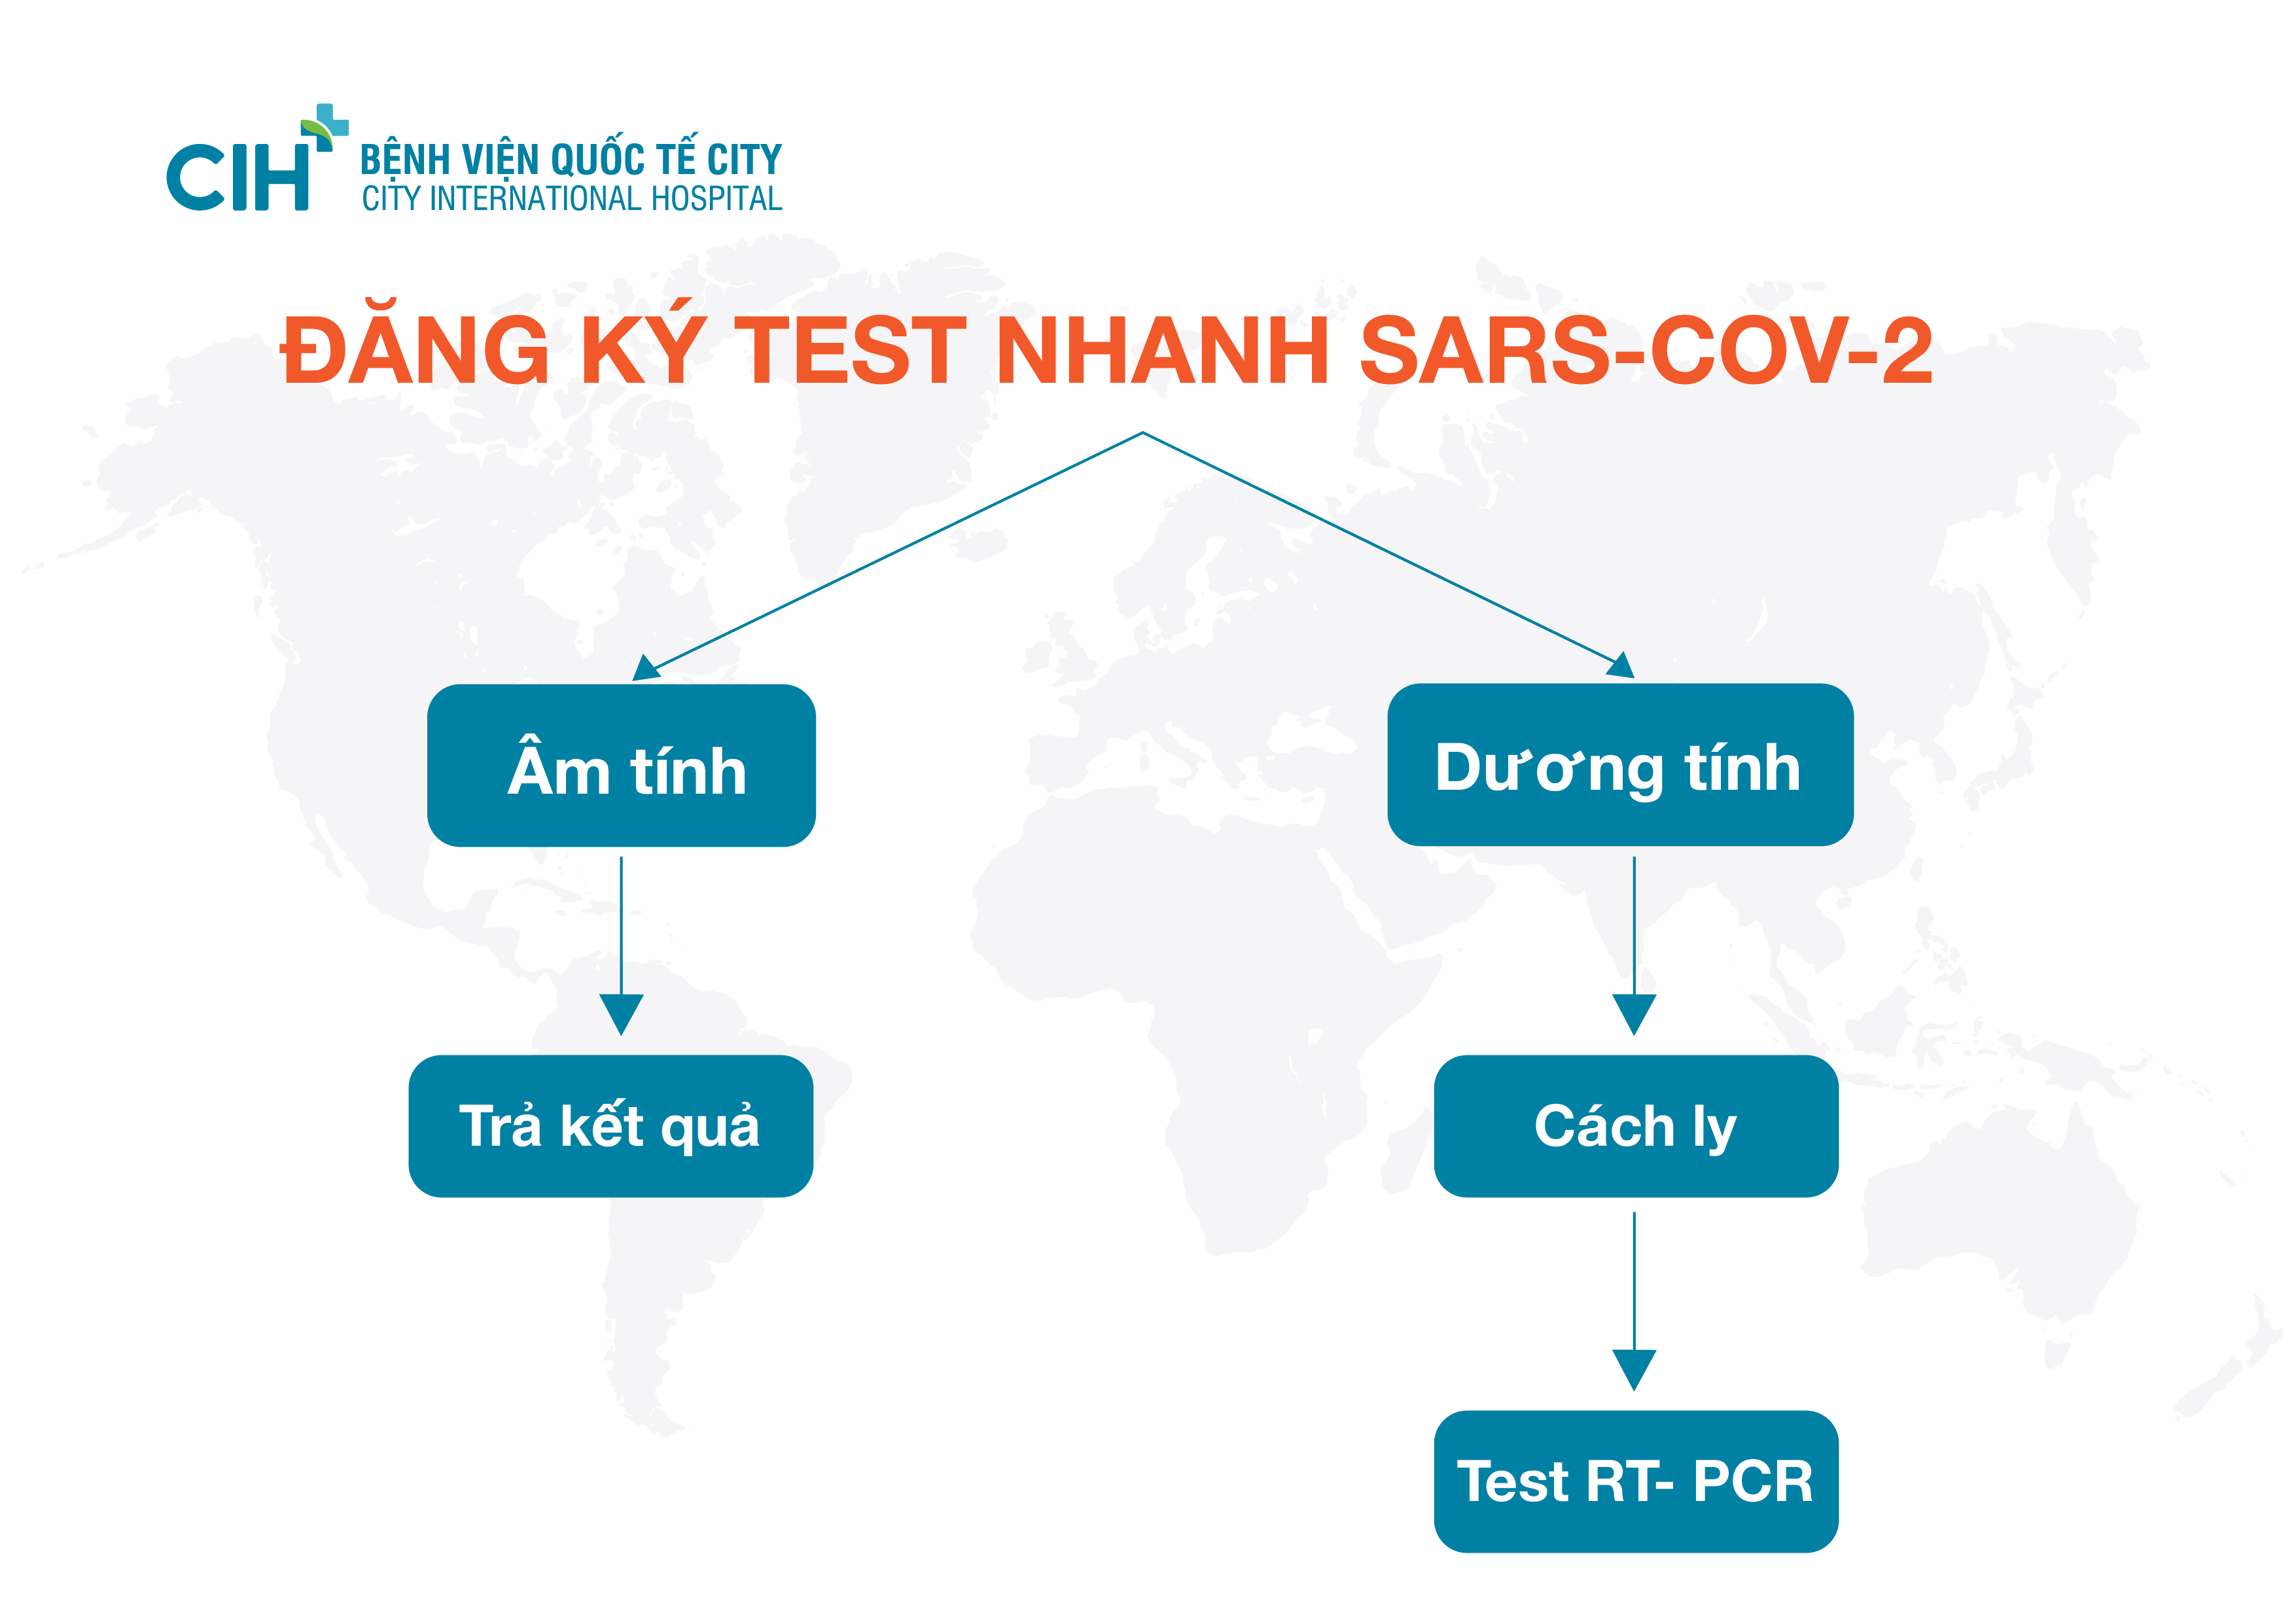 Quy trình test nhanh Sars-Co-V2 tại Bệnh viện Quốc tế City